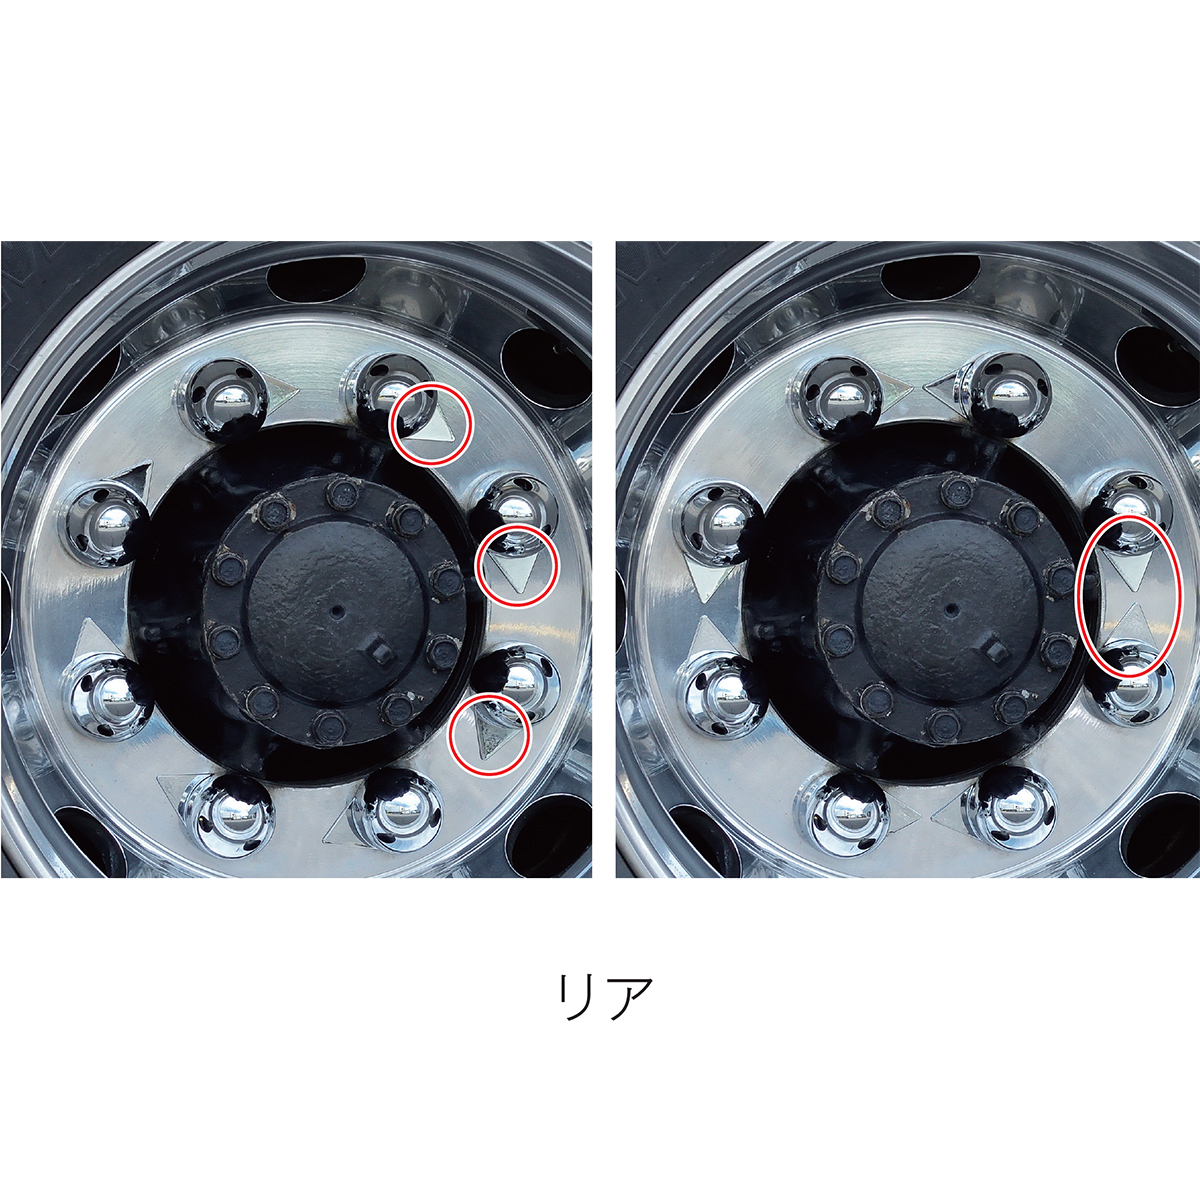 ゆるみチェック ナットキャップ クロームメッキ仕上げ 新ISO規格対応 33mm 全高53.5mm インジケーター 大型低床車用 8ヶ入